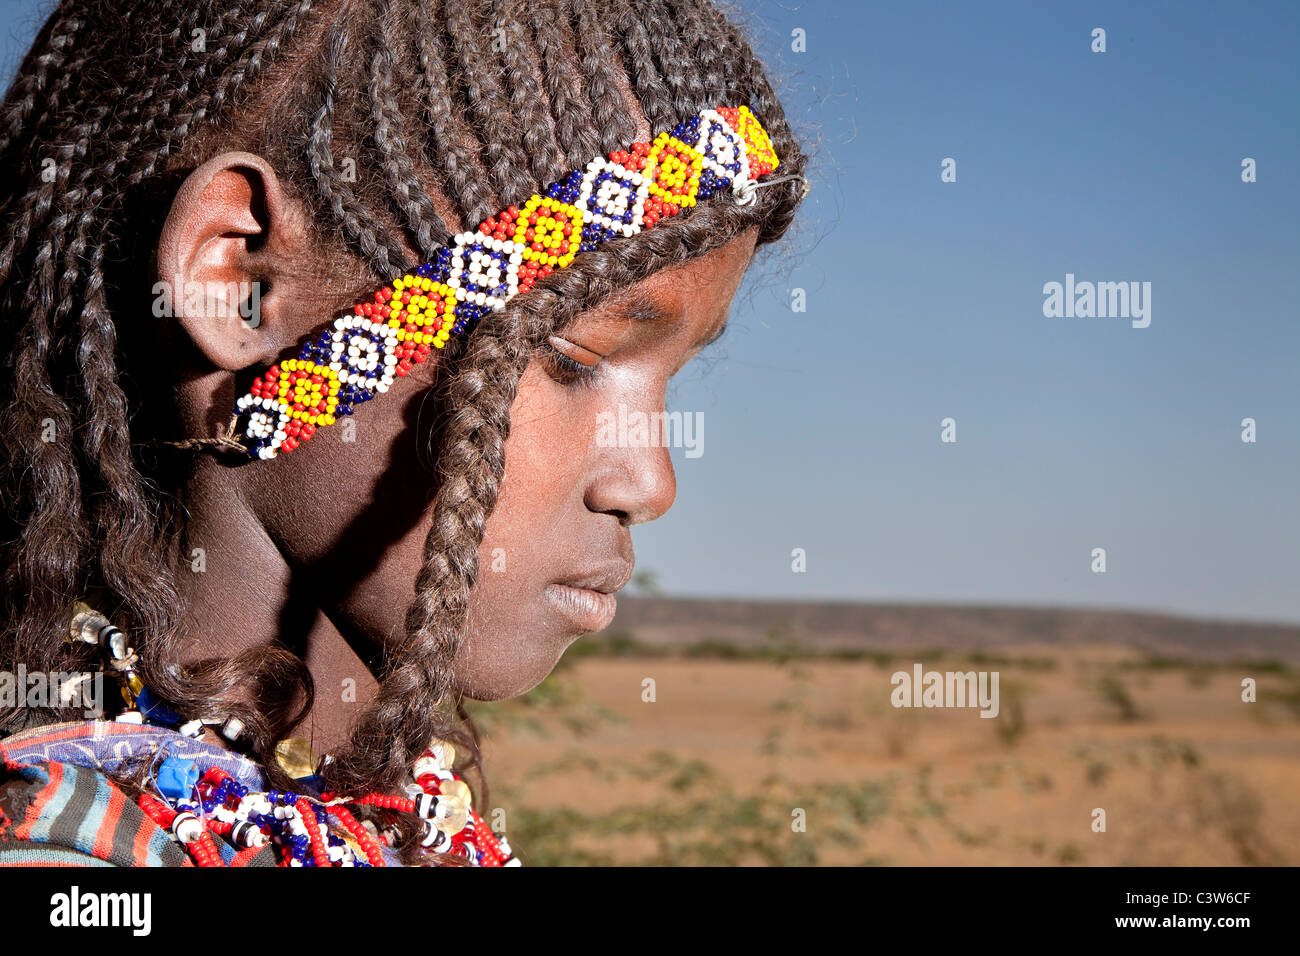 Chica de Afar, la carretera entre Bati y Mille, Etiopía, África Foto de stock